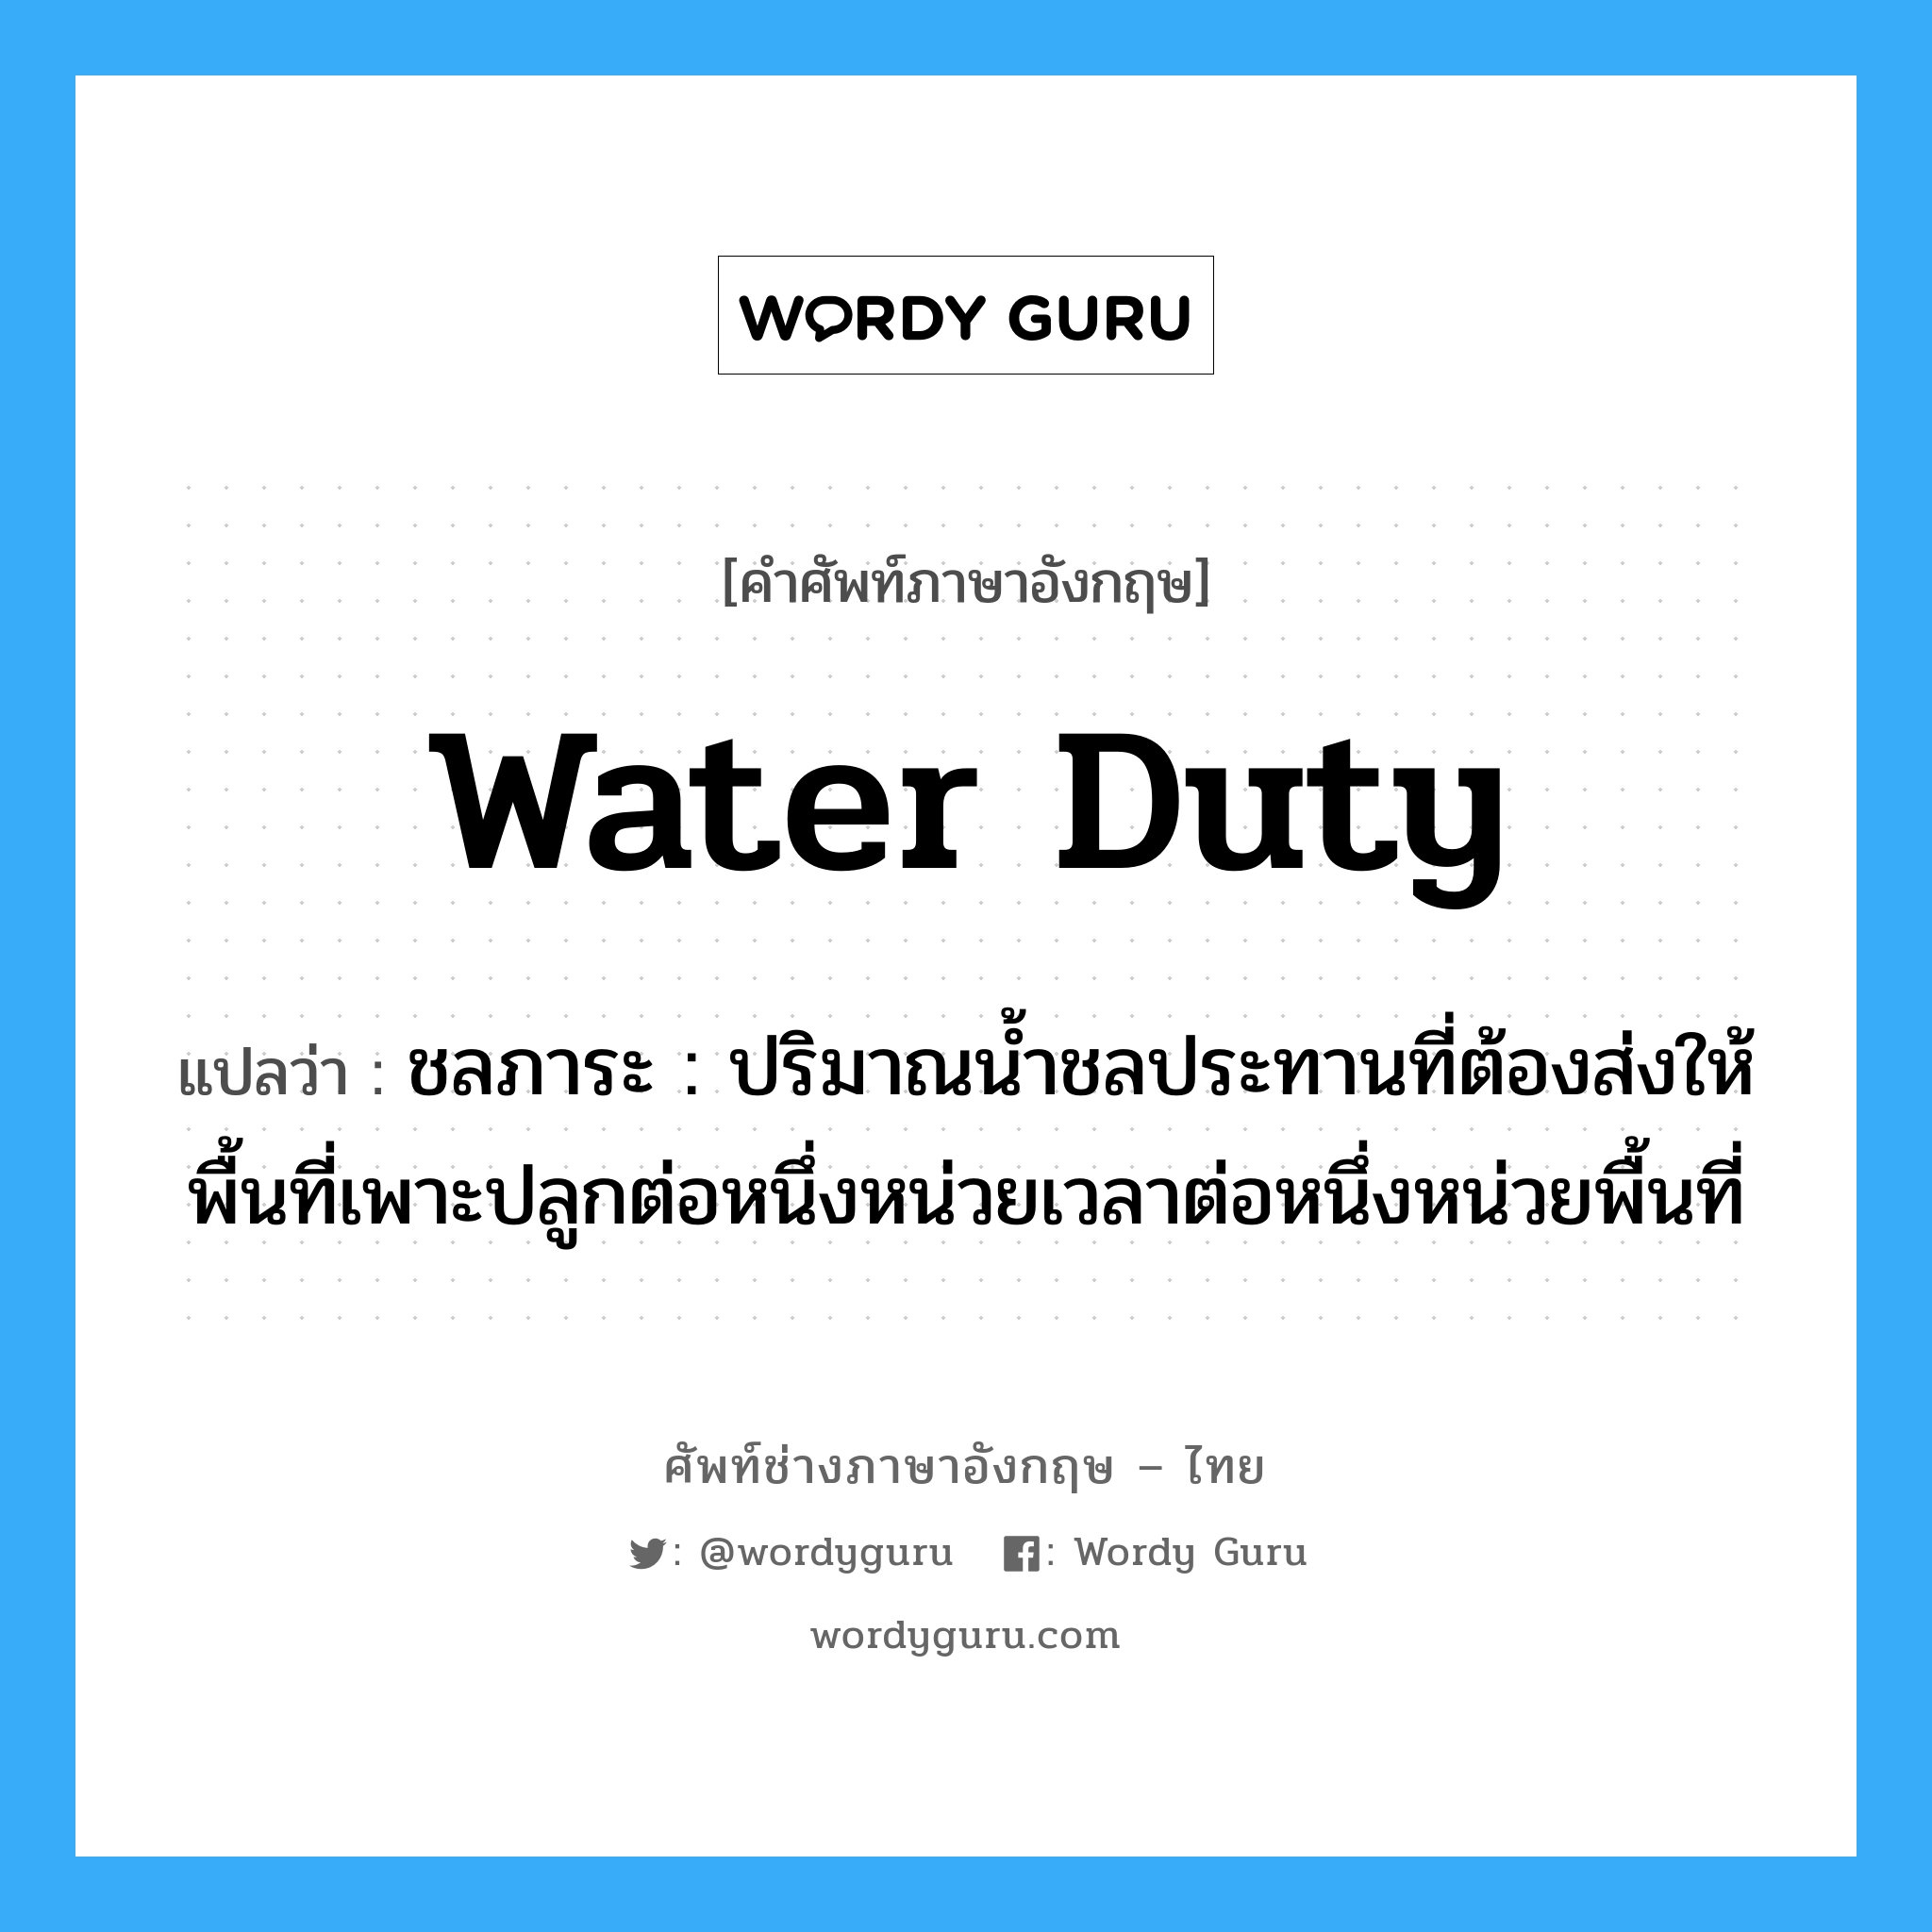 water duty แปลว่า?, คำศัพท์ช่างภาษาอังกฤษ - ไทย water duty คำศัพท์ภาษาอังกฤษ water duty แปลว่า ชลภาระ : ปริมาณน้ำชลประทานที่ต้องส่งให้พื้นที่เพาะปลูกต่อหนึ่งหน่วยเวลาต่อหนึ่งหน่วยพื้นที่